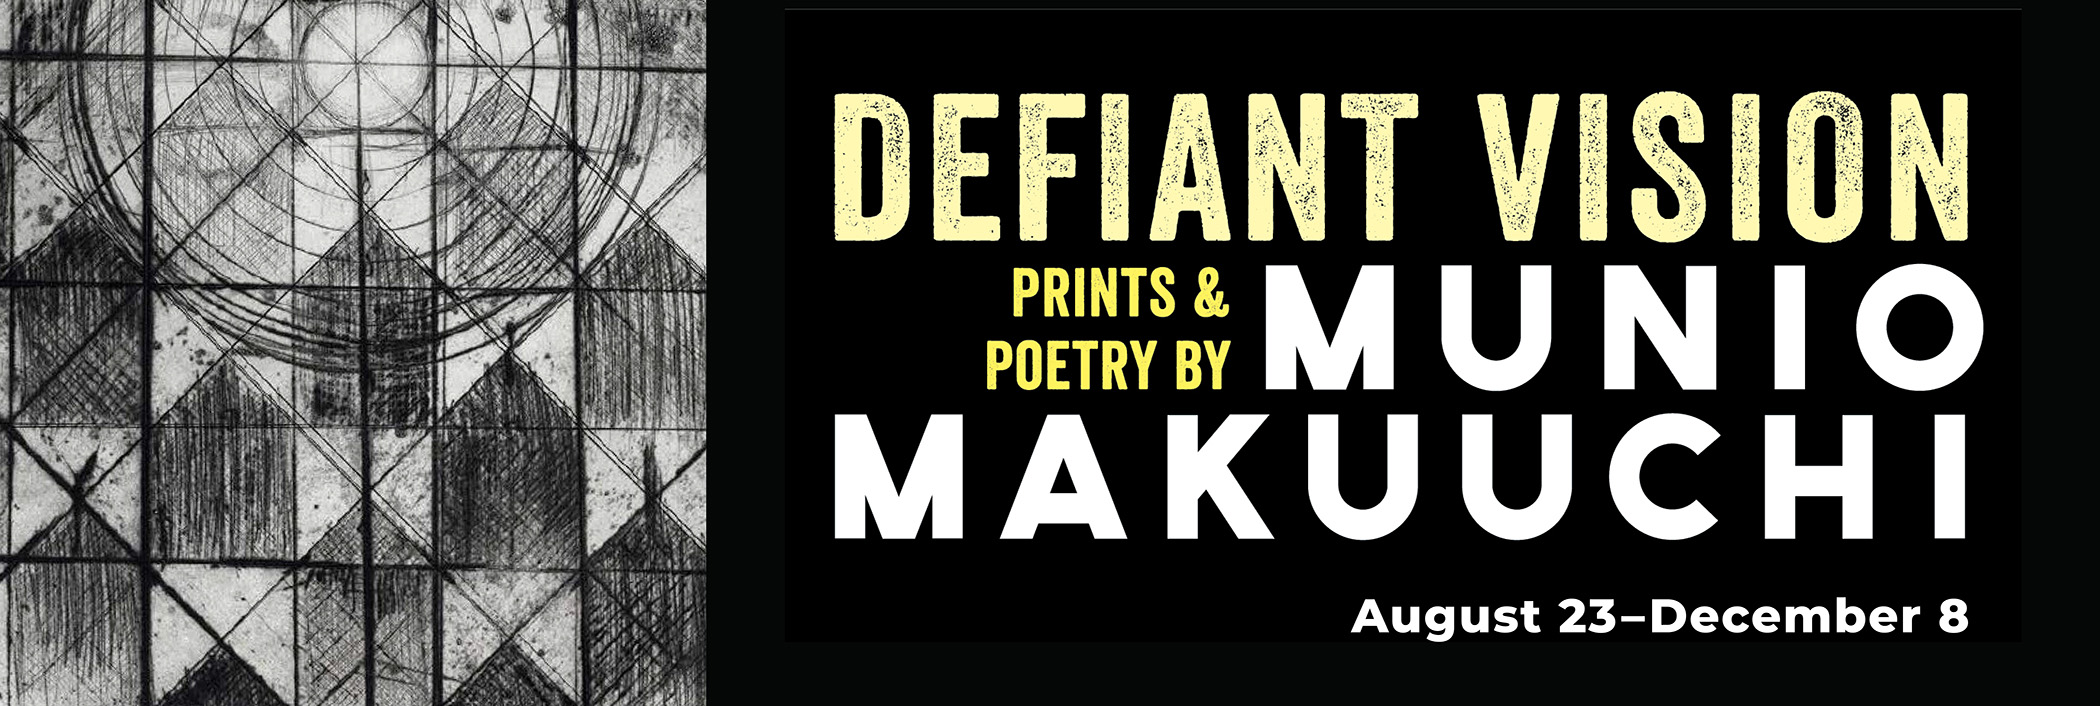 Defiant Vision: Prints & Poetry by Munio Makuuchi 